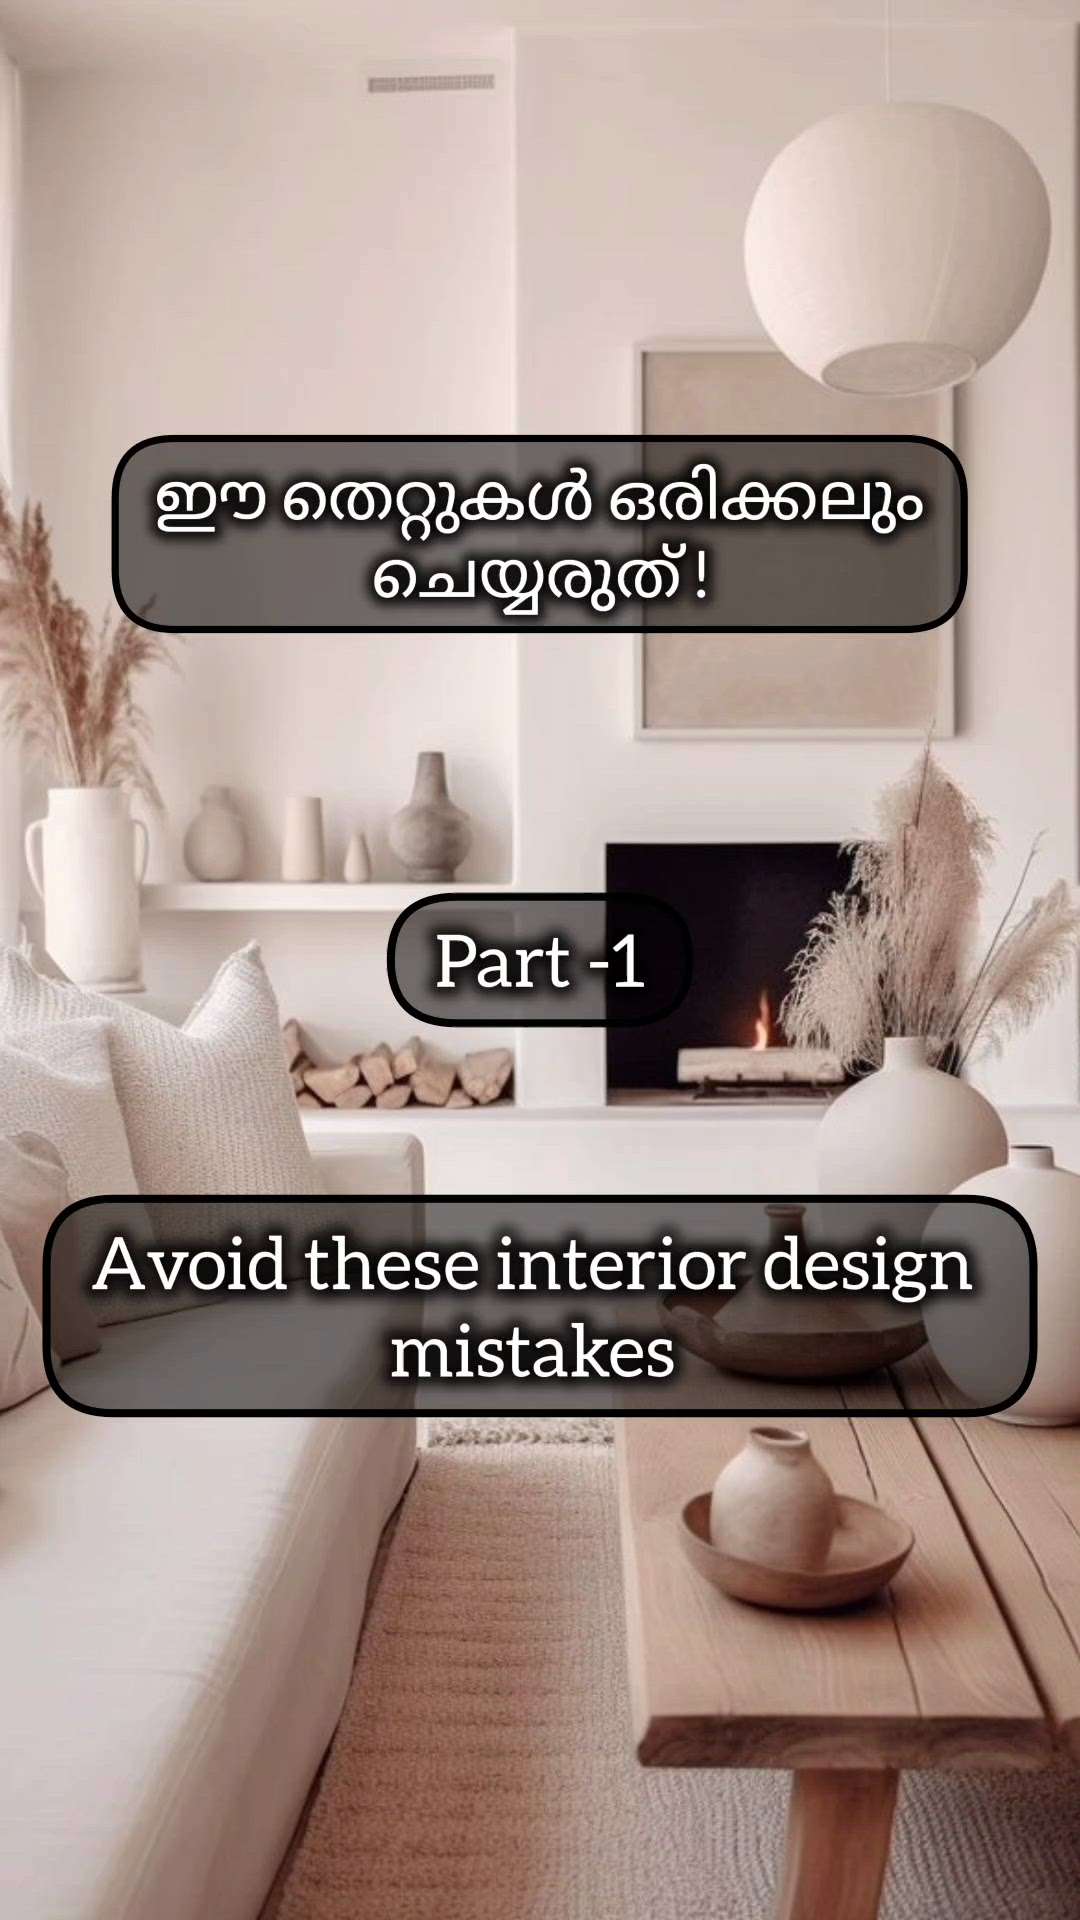 വീടിന് ഇന്റീരിയർ ചെയ്യുമ്പോൾ ഈ മിസ്റ്റേക്കുകൾ ഒരിക്കലും ചെയ്യരുത്!

Avoid these mistake while making your home interior

#creatorsofkolo #avoid #design #interiordesign #interior #mistakes